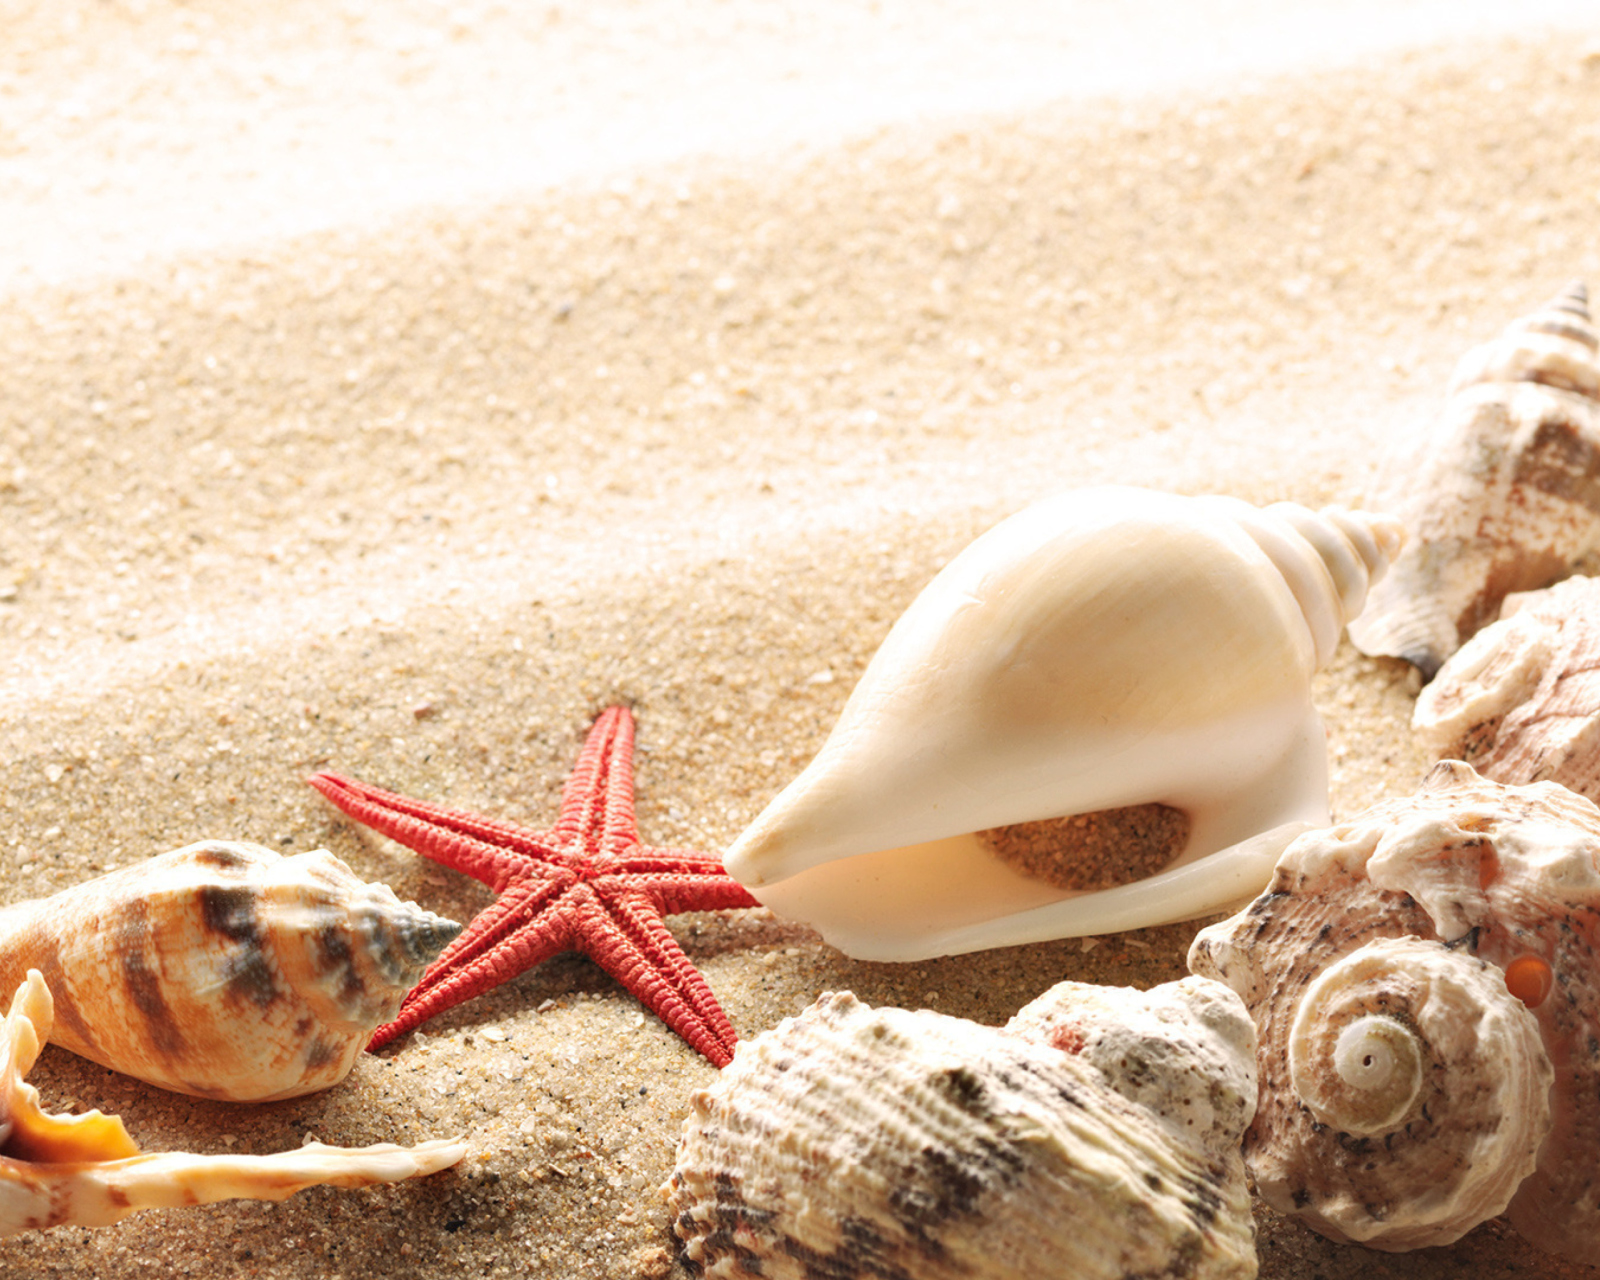 Обои Seashells On The Beach 1600x1280